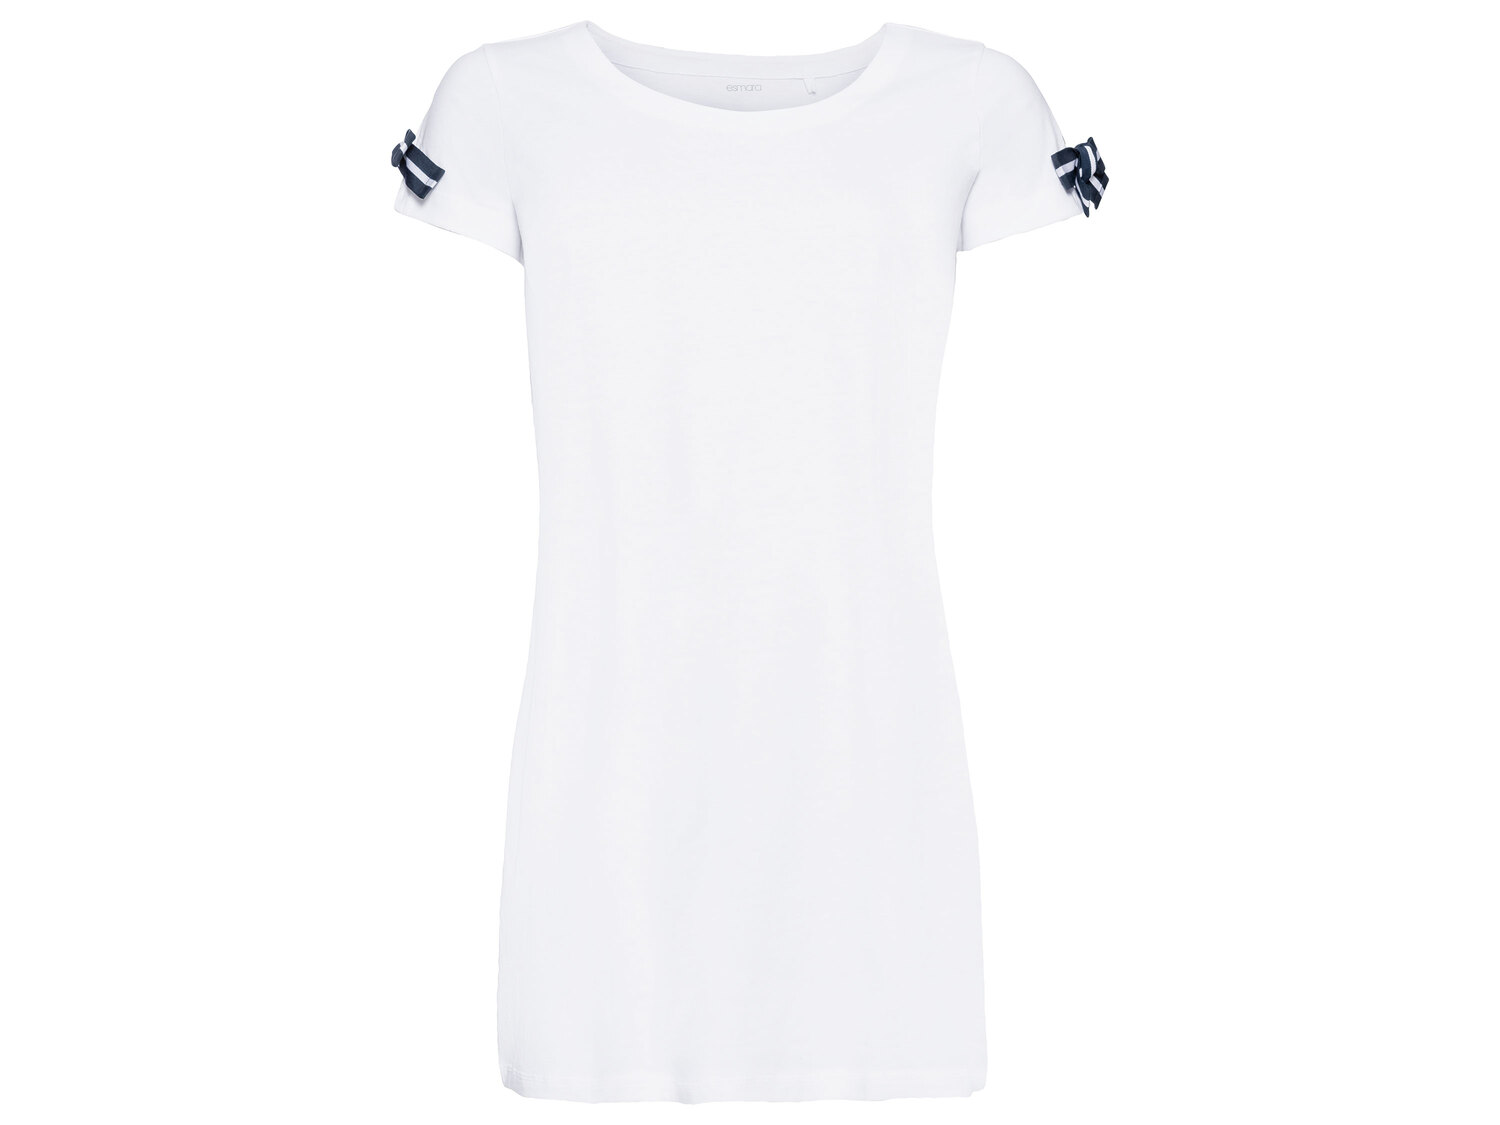 T-shirt long , le prix 4.99 € 
- Du M au XL selon modèle
- Ex. 100 % coton
- ...